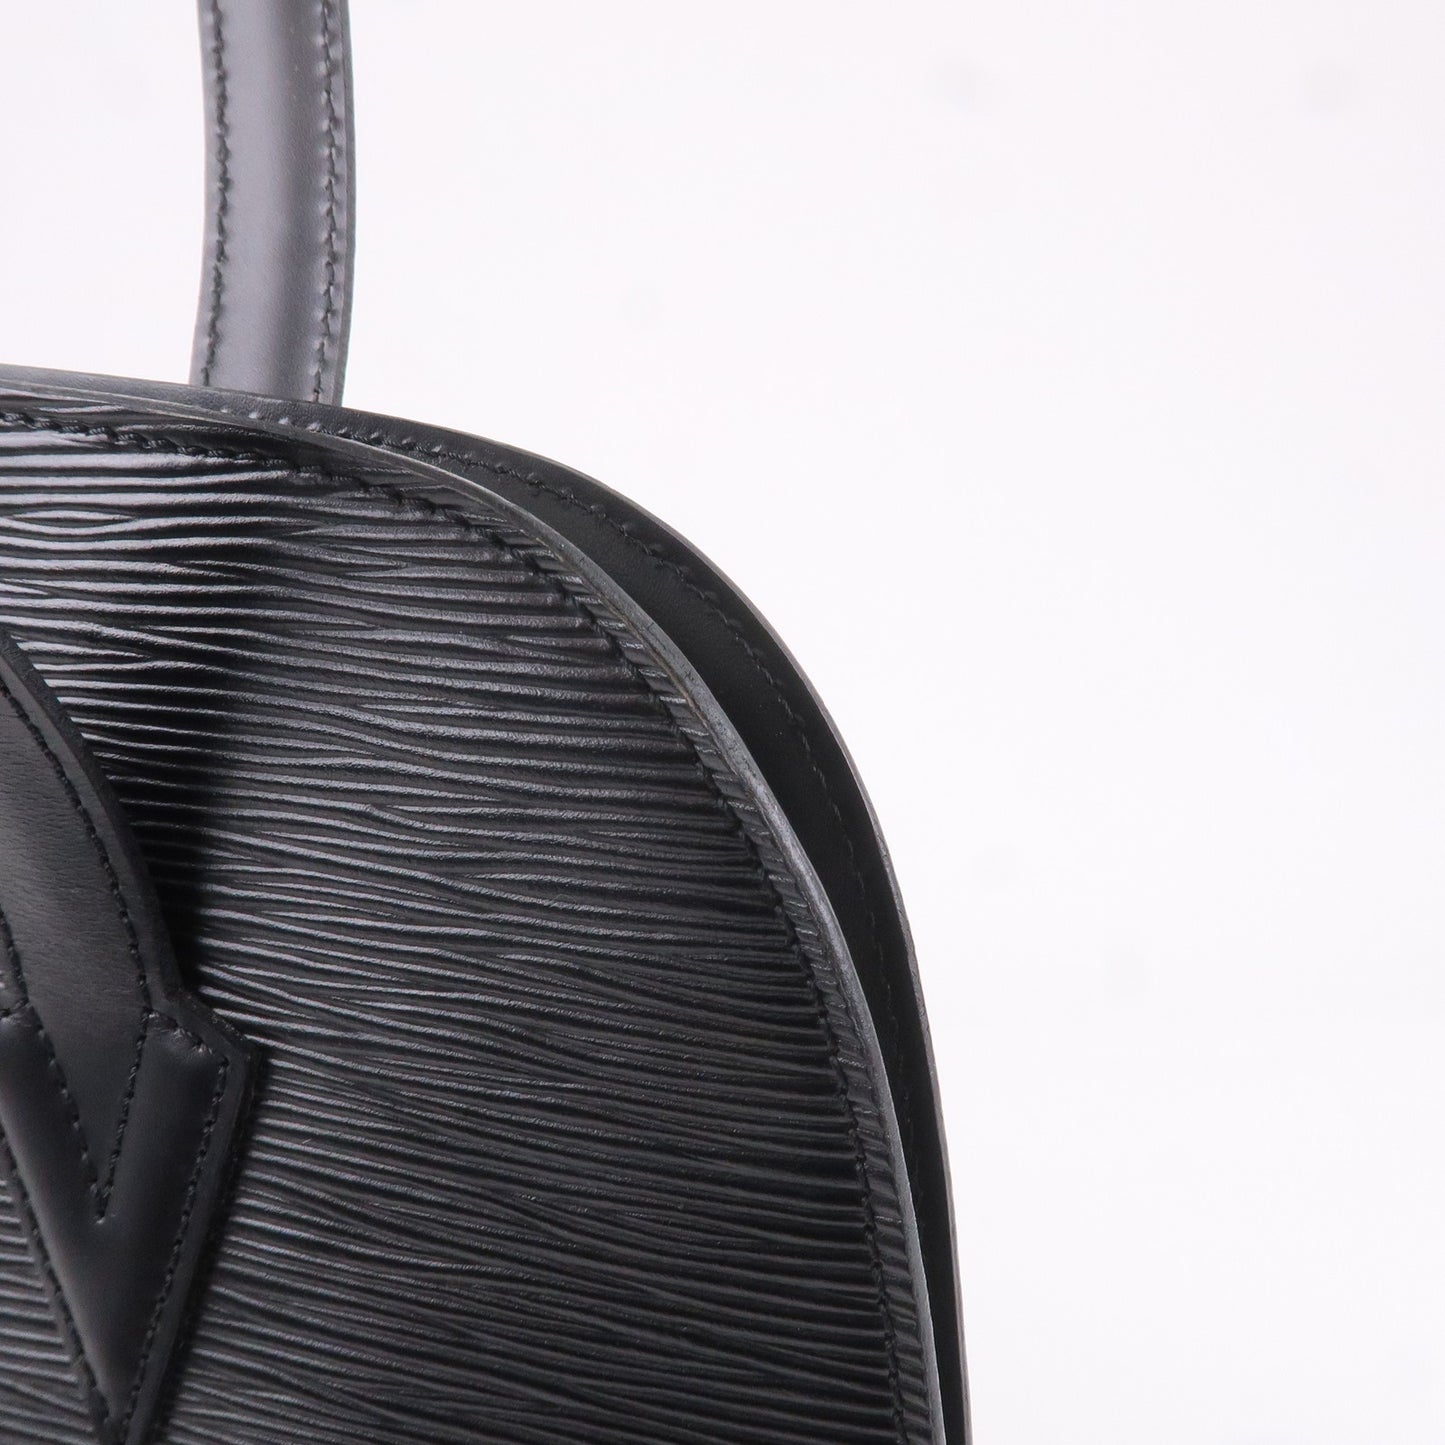 Louis Vuitton Epi Lussac Shoulder Bag Noir Black M52282